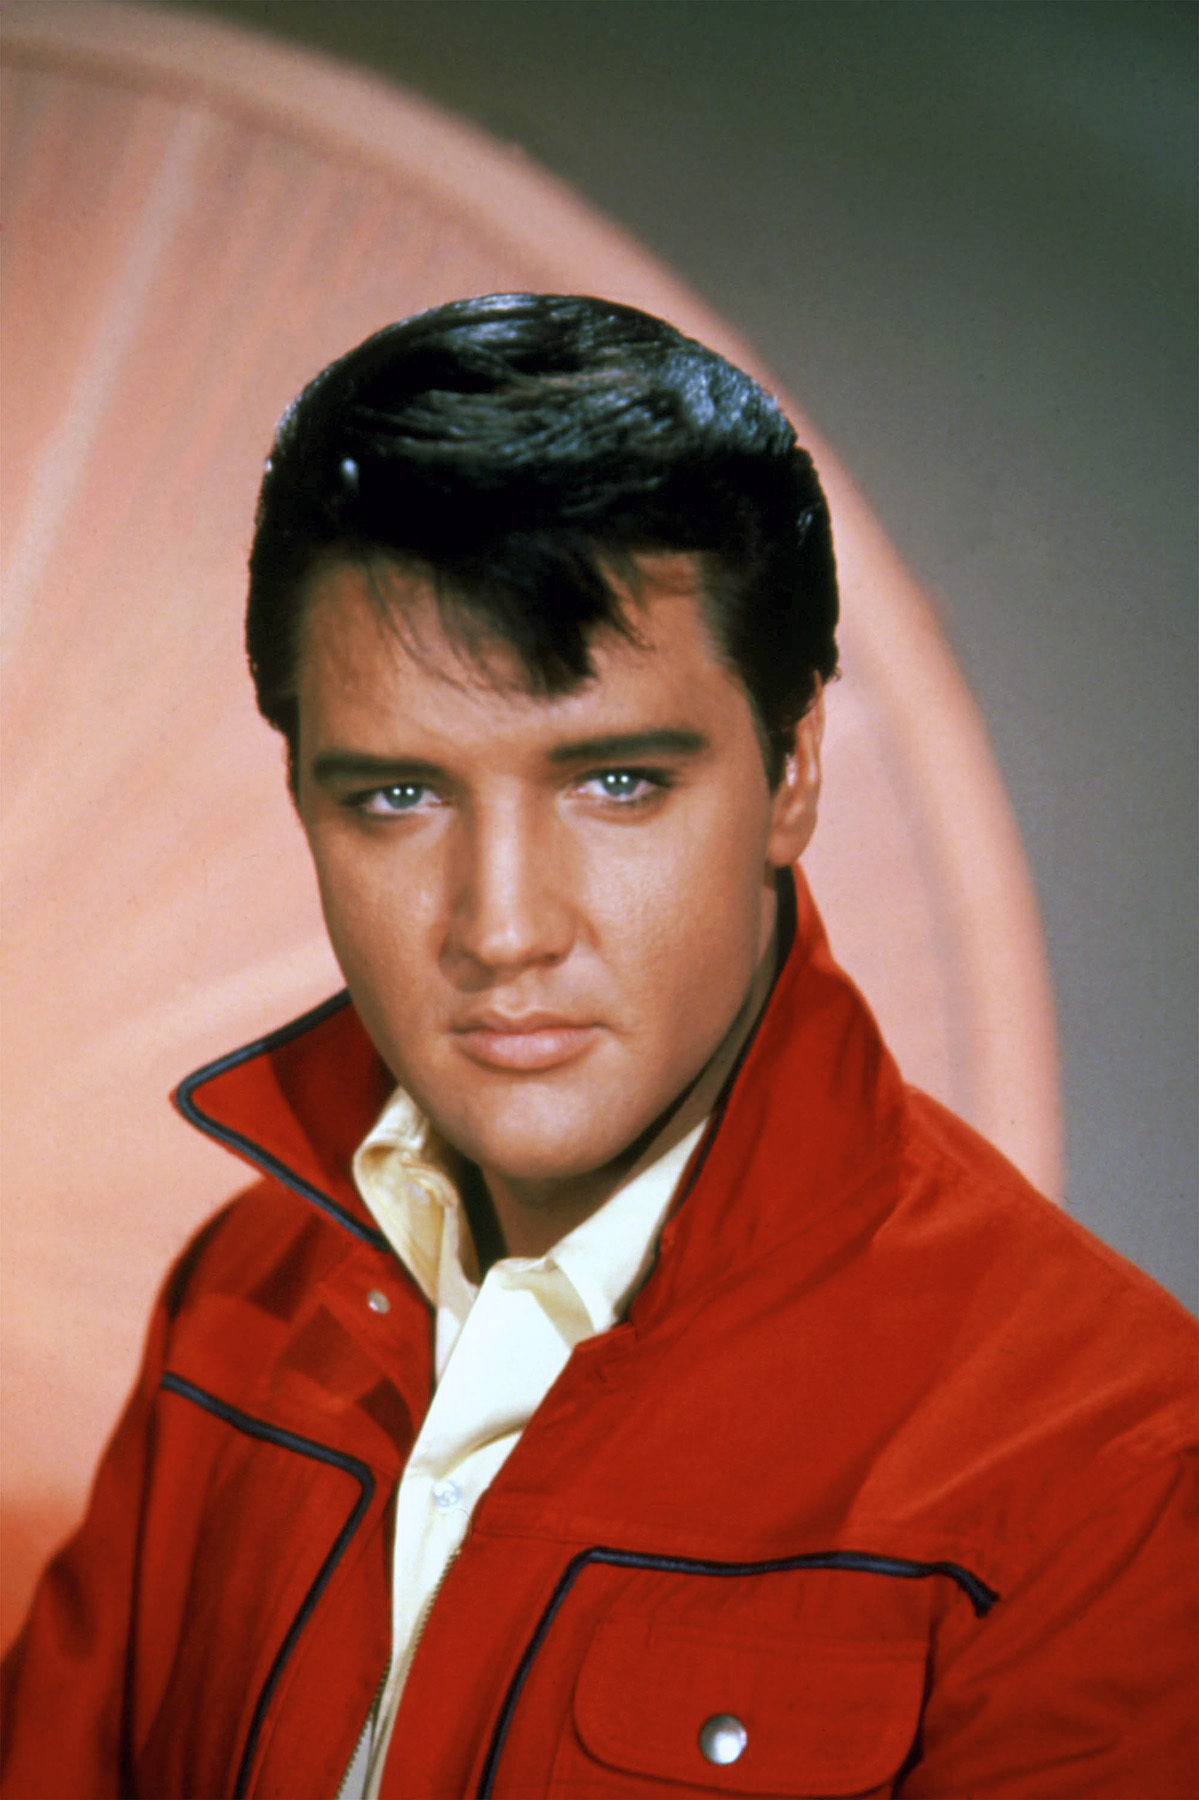 Elvis Presley - 